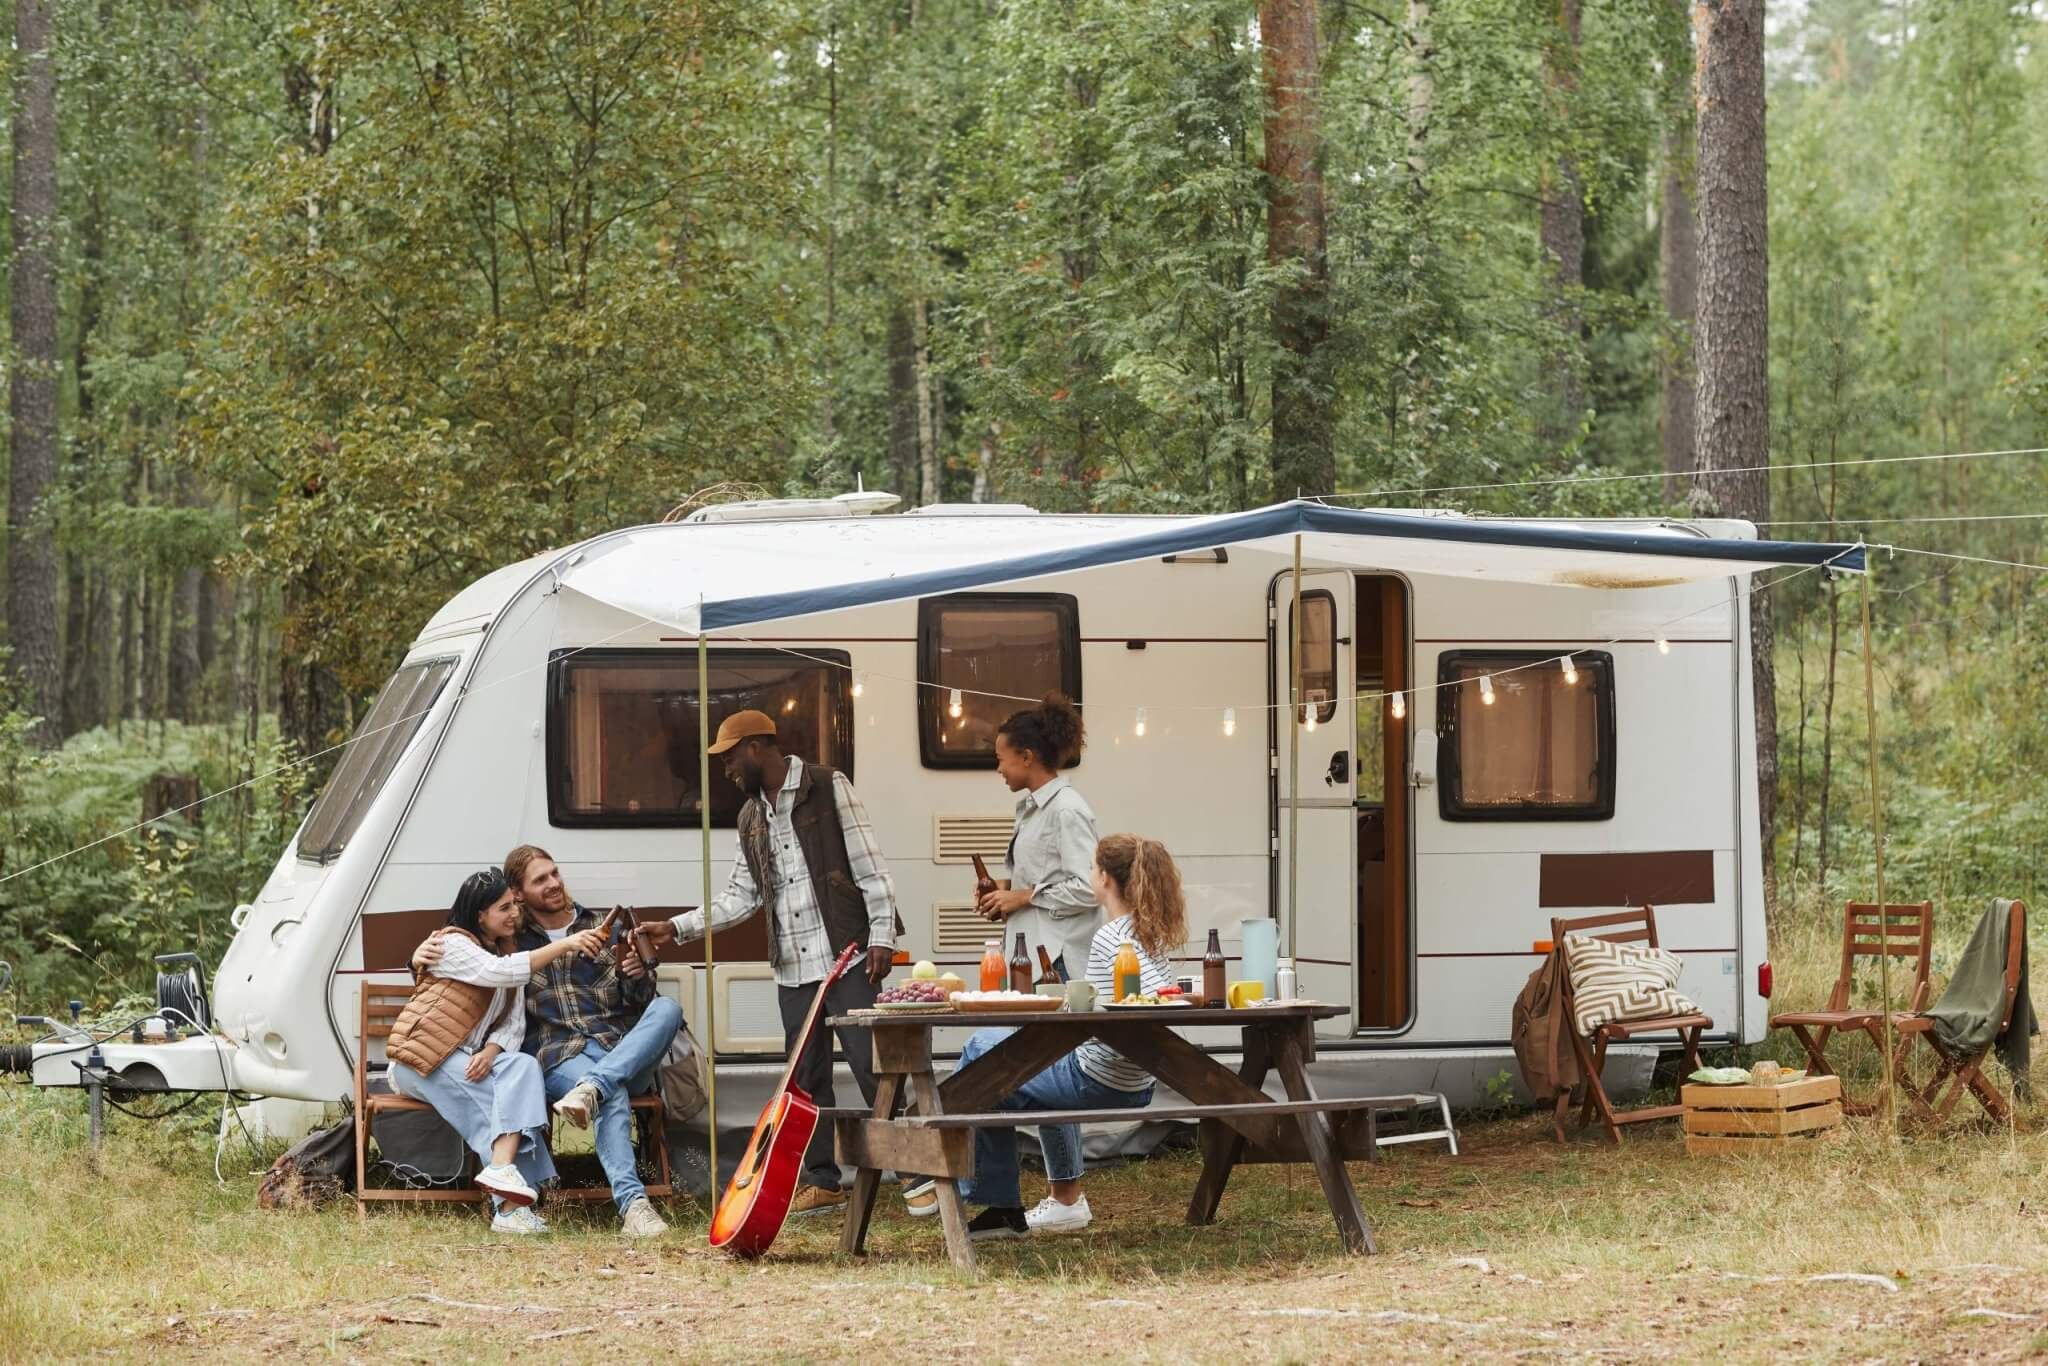 Campingurlaub auf Sparflamme? Deutsche sind spendable Camperinnen und Camper